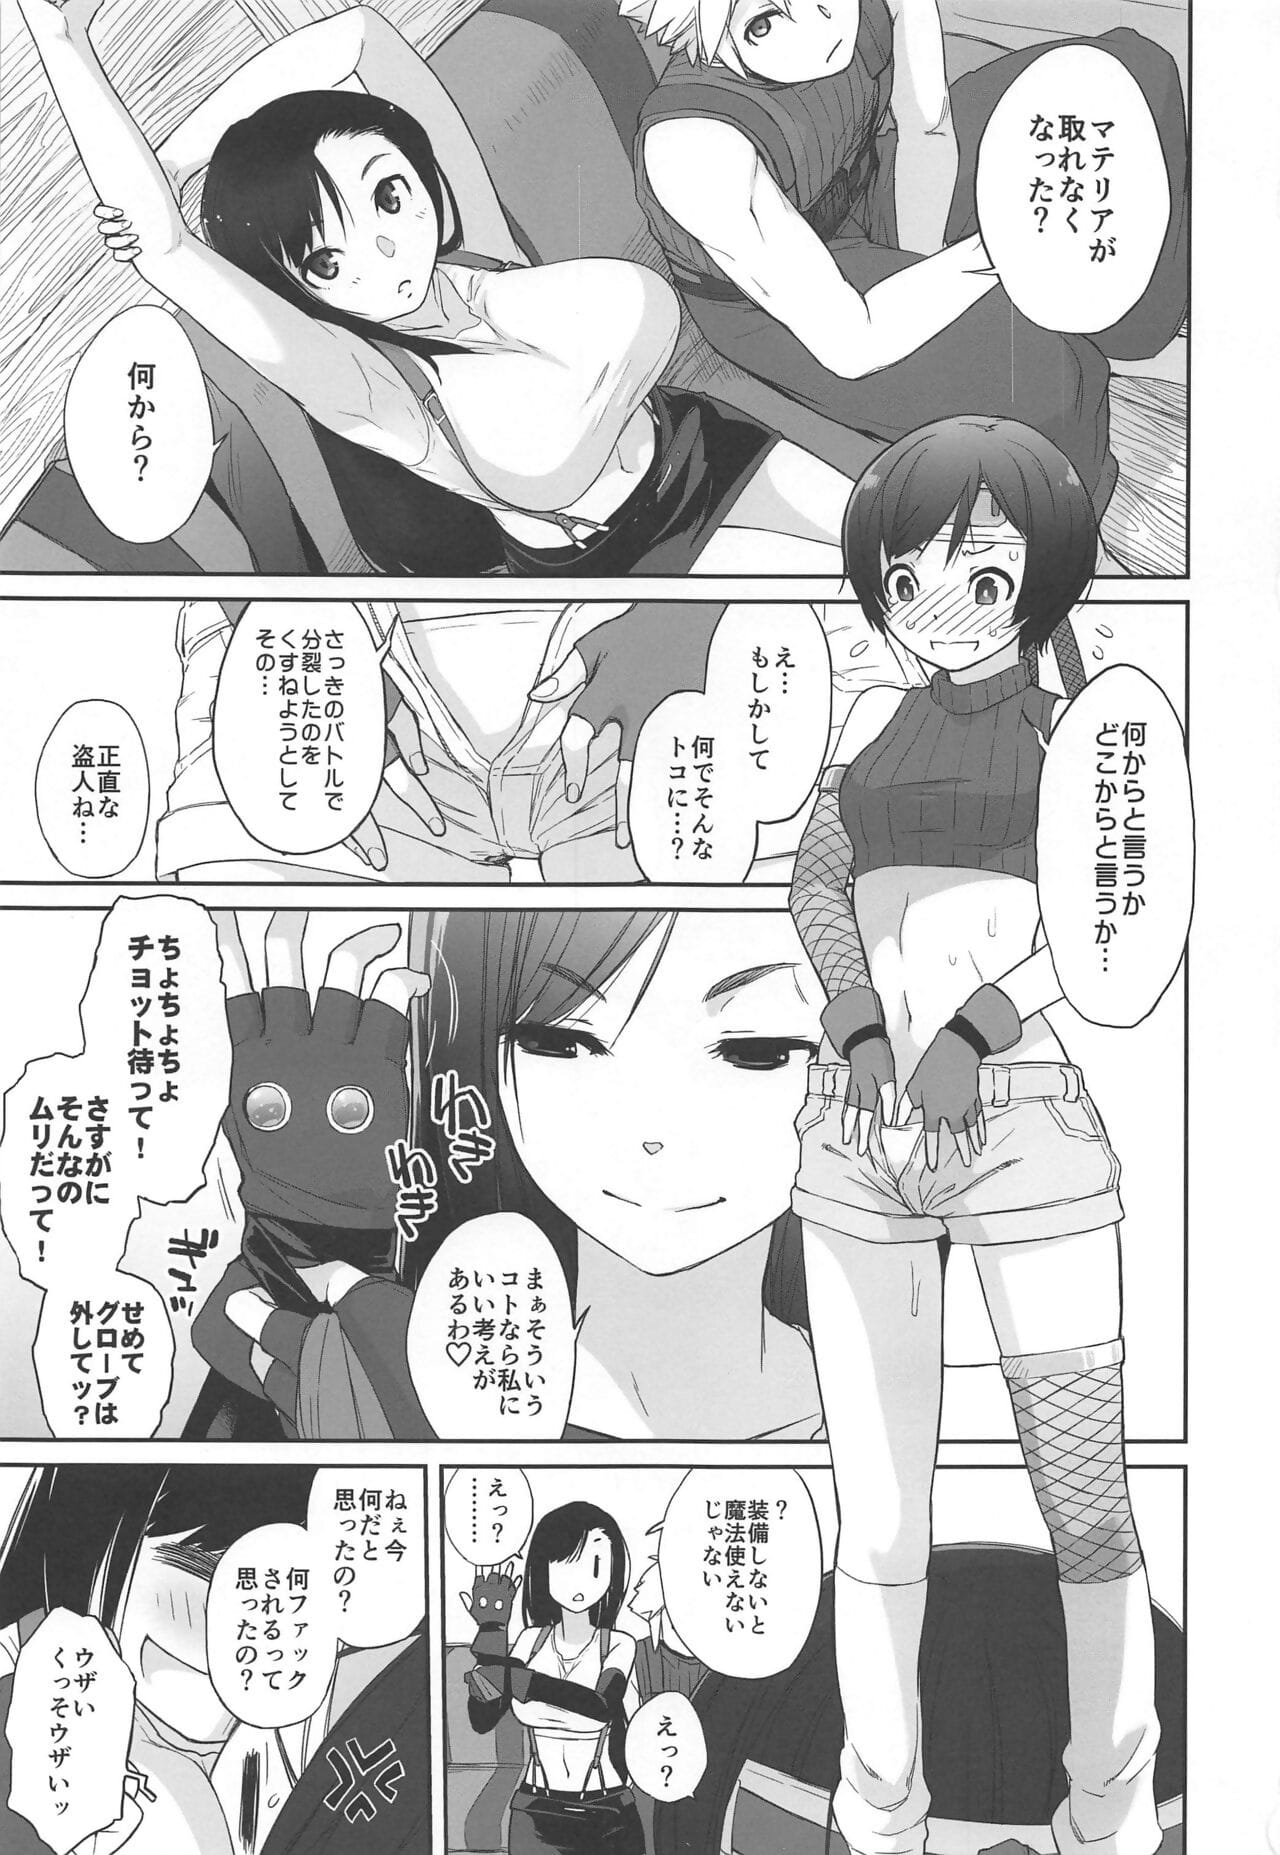 liệu x :cô gái: #2 chị tifa không tối thiểu daisakusen! page 1